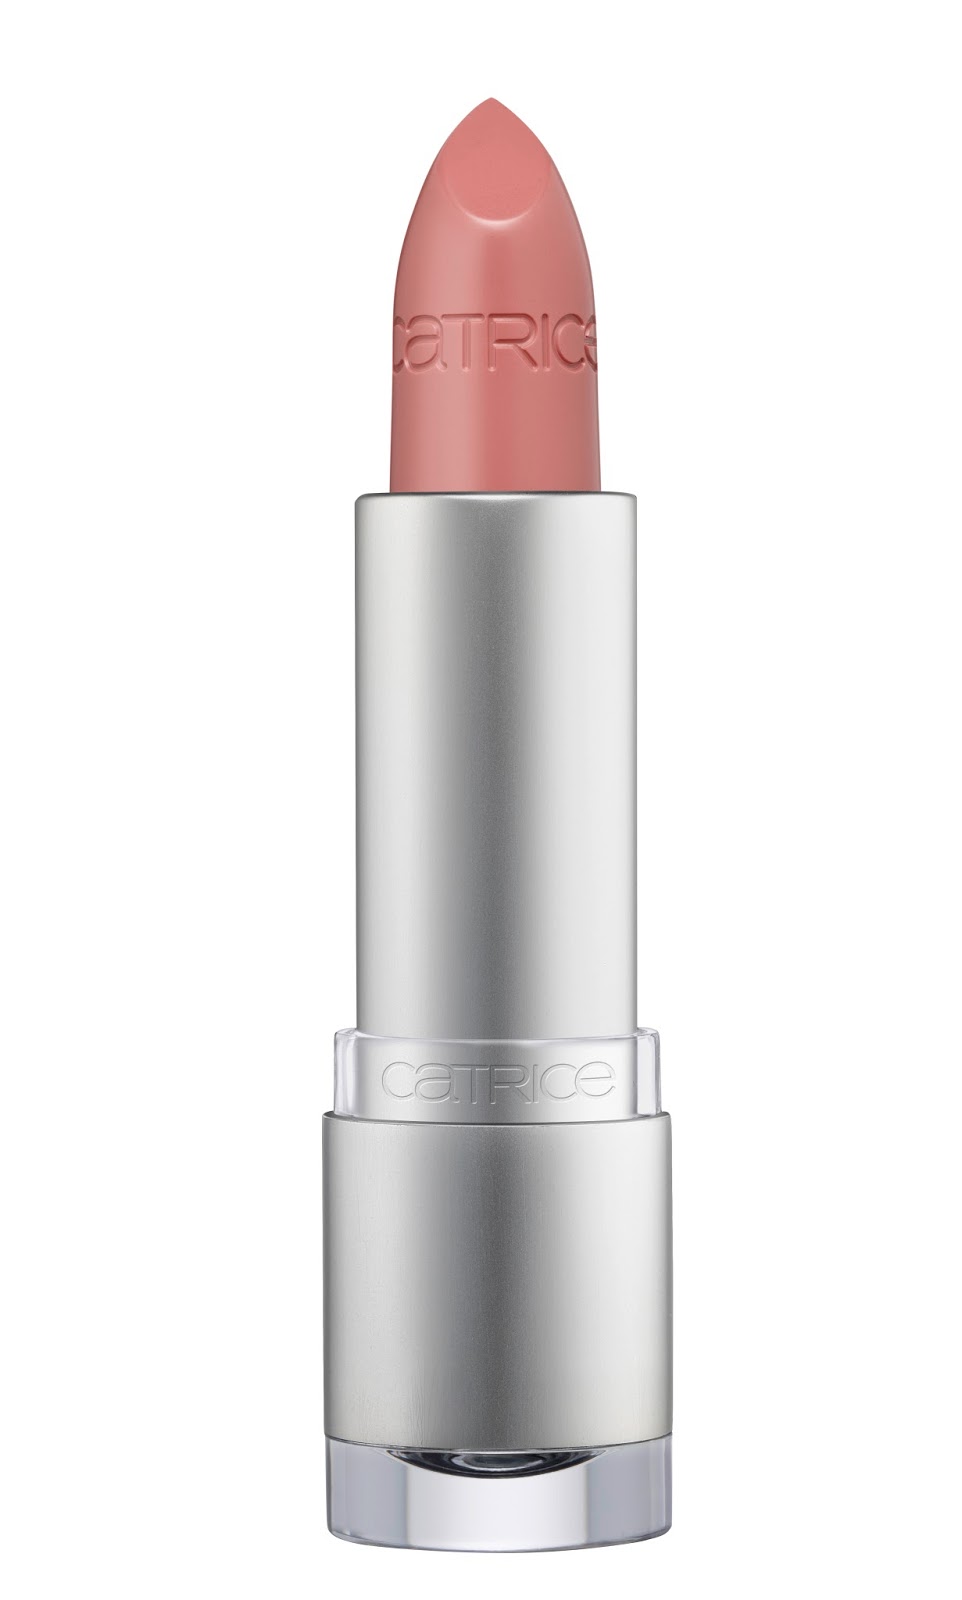 Catrice - Luminous Lips Lipstick